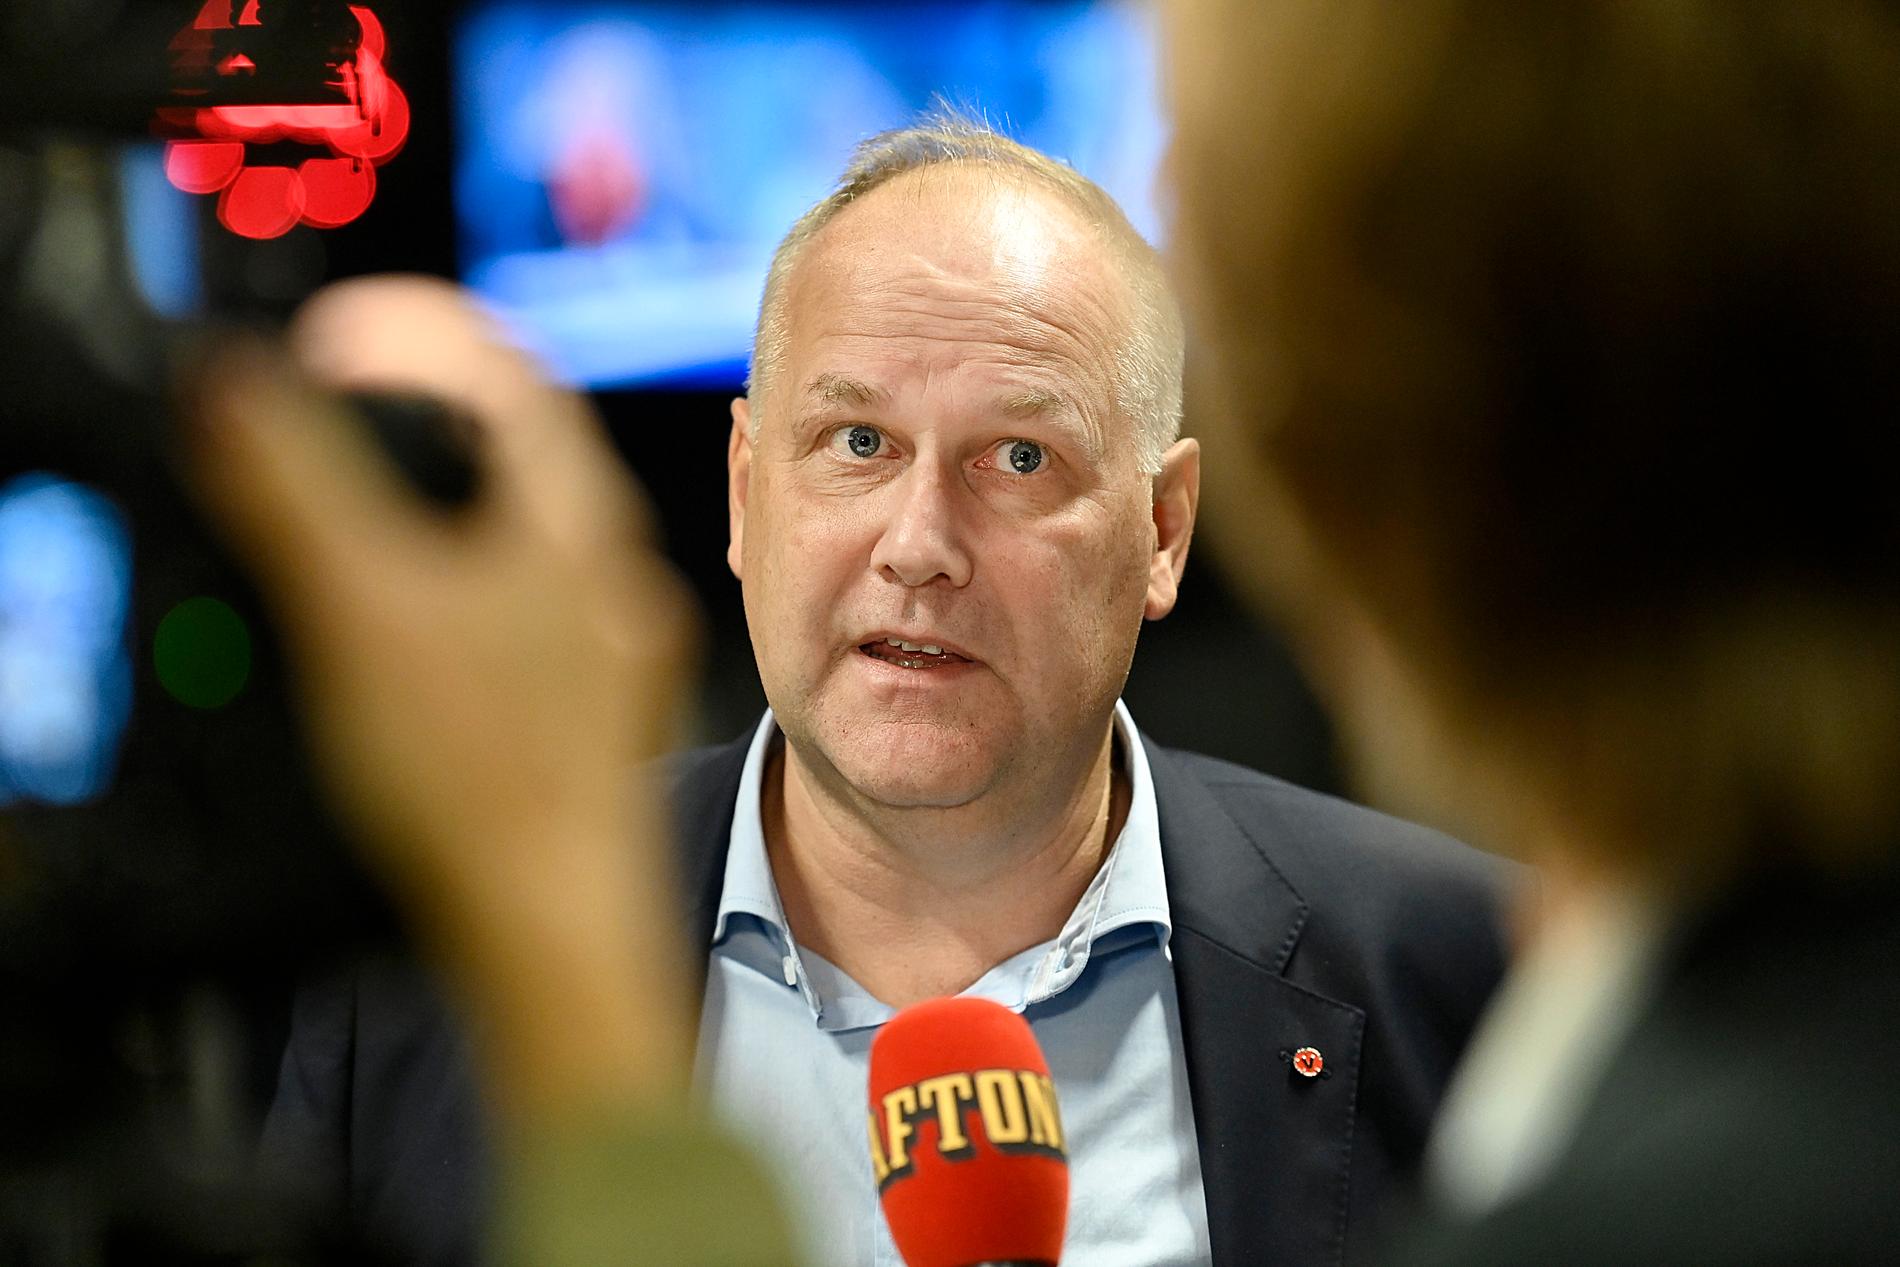 Jonas Sjöstedt vann debatten, enligt Aftonbladet/Demoskop.